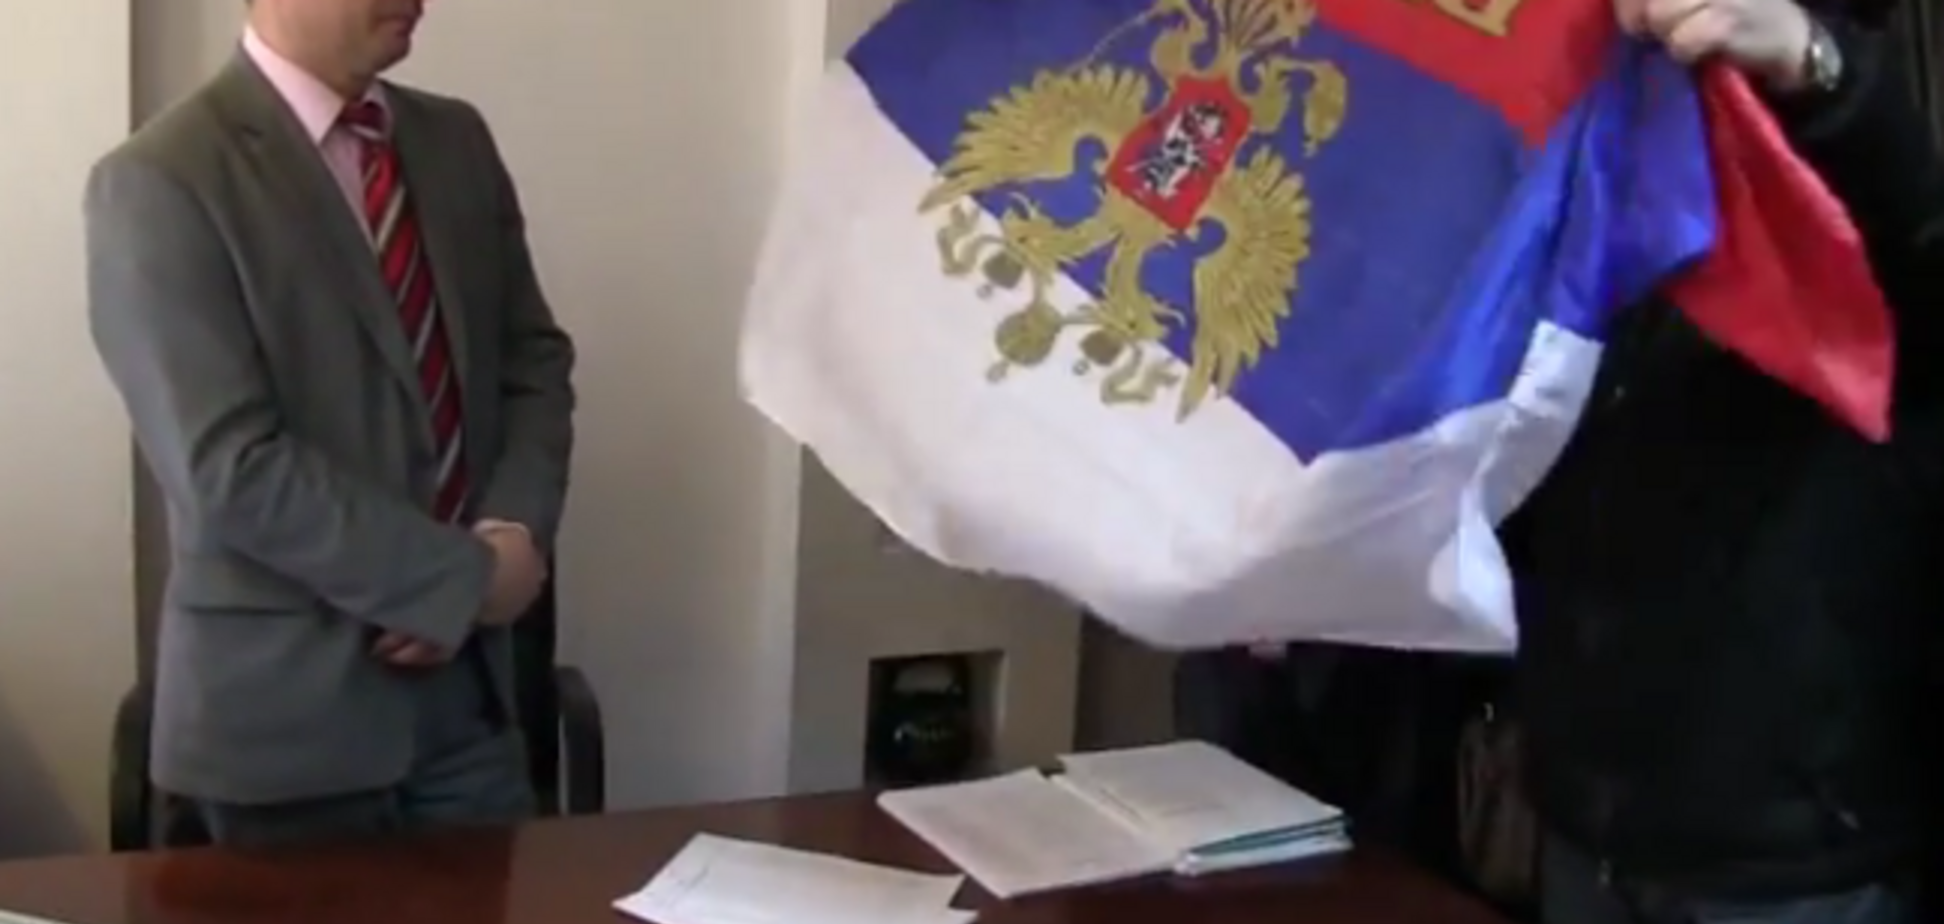 У директора днепропетровского театра нашли российский флаг: 'сепаратист' оказался в мусорном баке и в яйцах